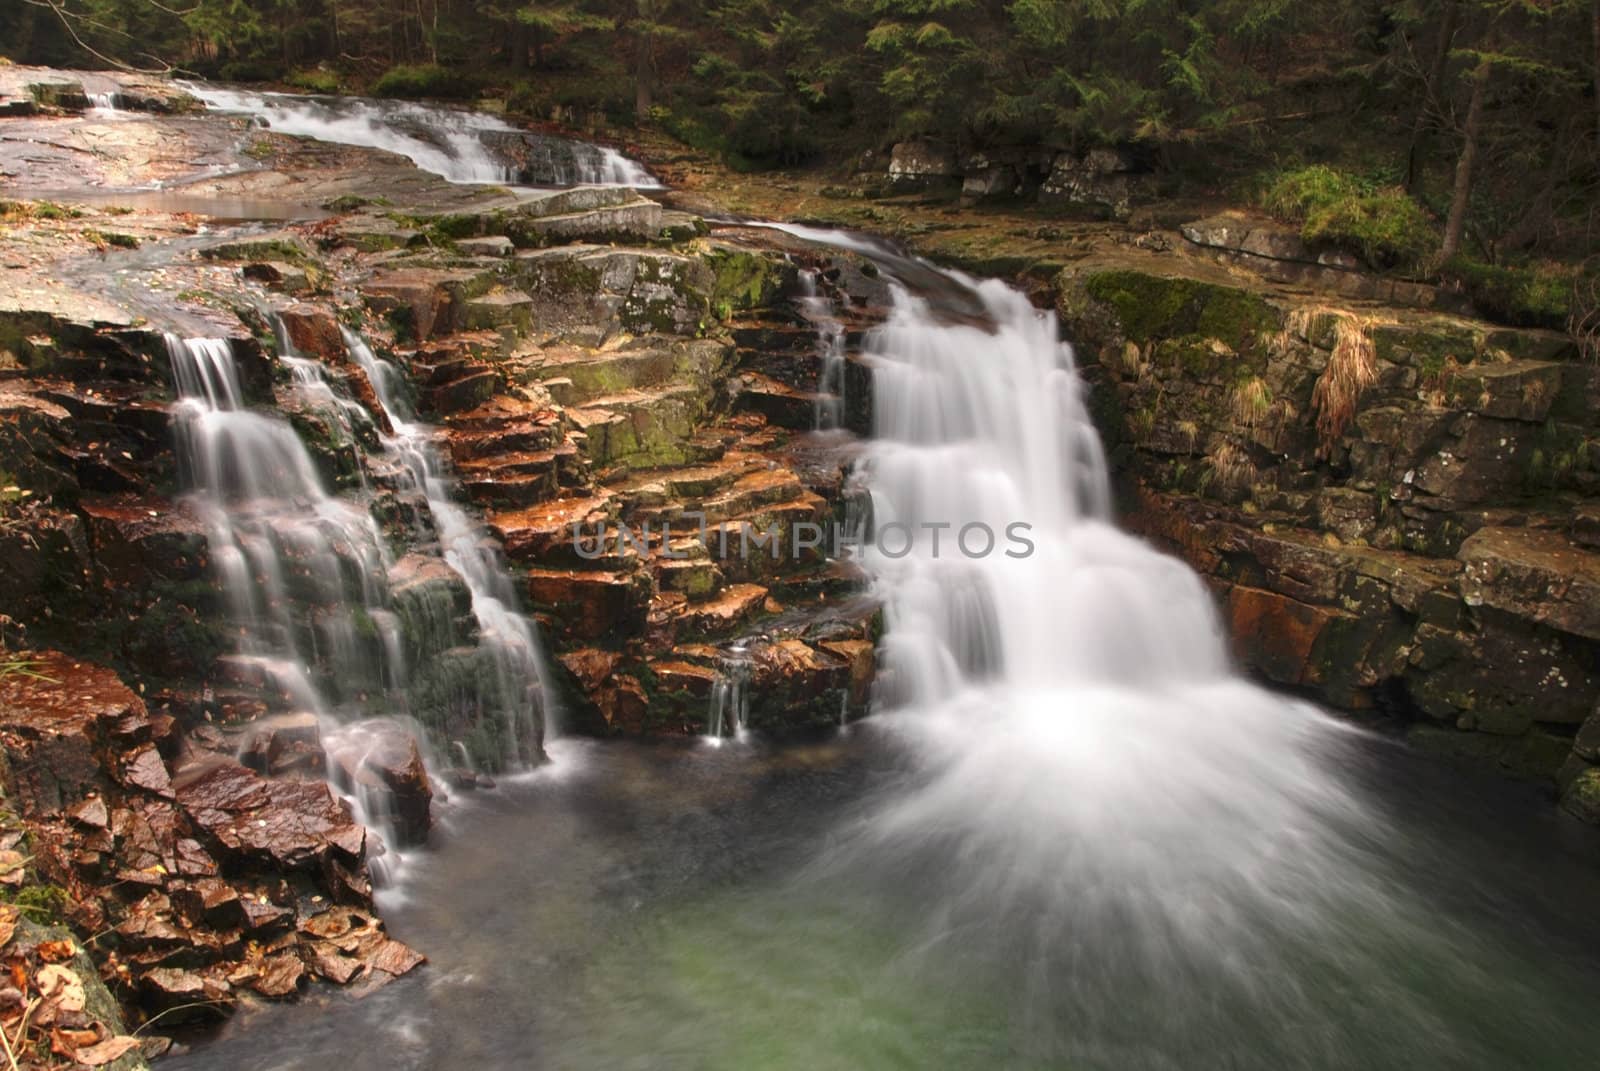 Waterfall by drakodav